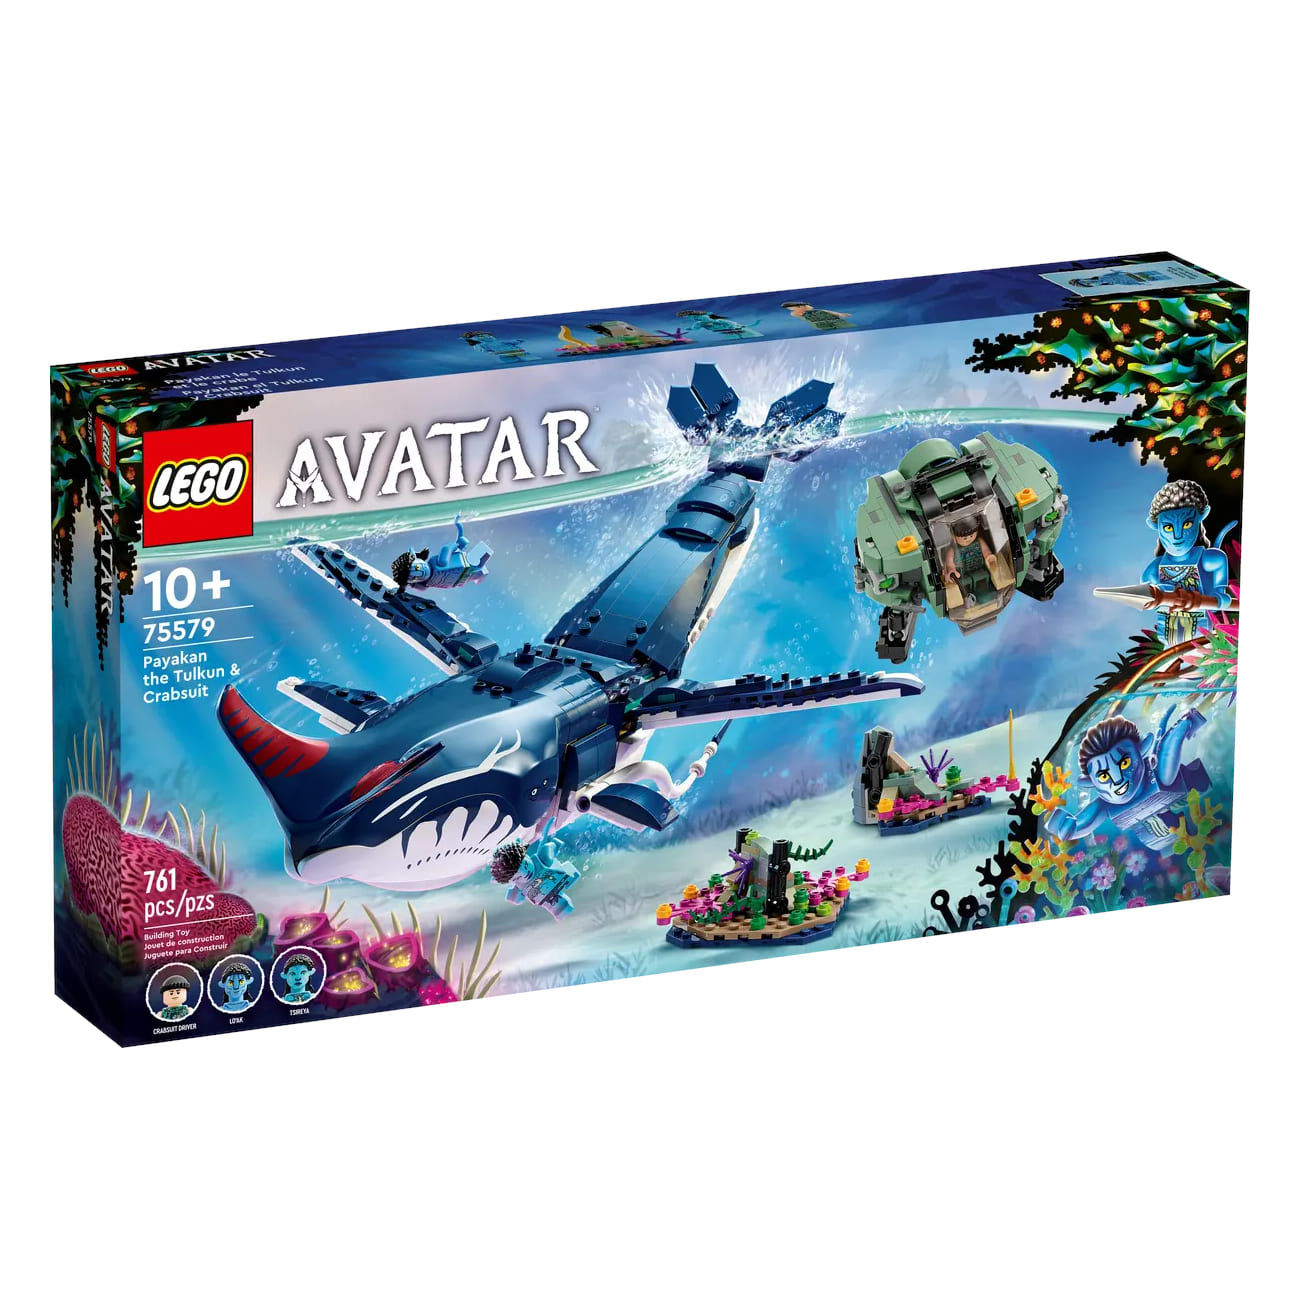 Конструктор LEGO Avatar Payakan the Tulkun & Crabsuit 75579, 761 деталь